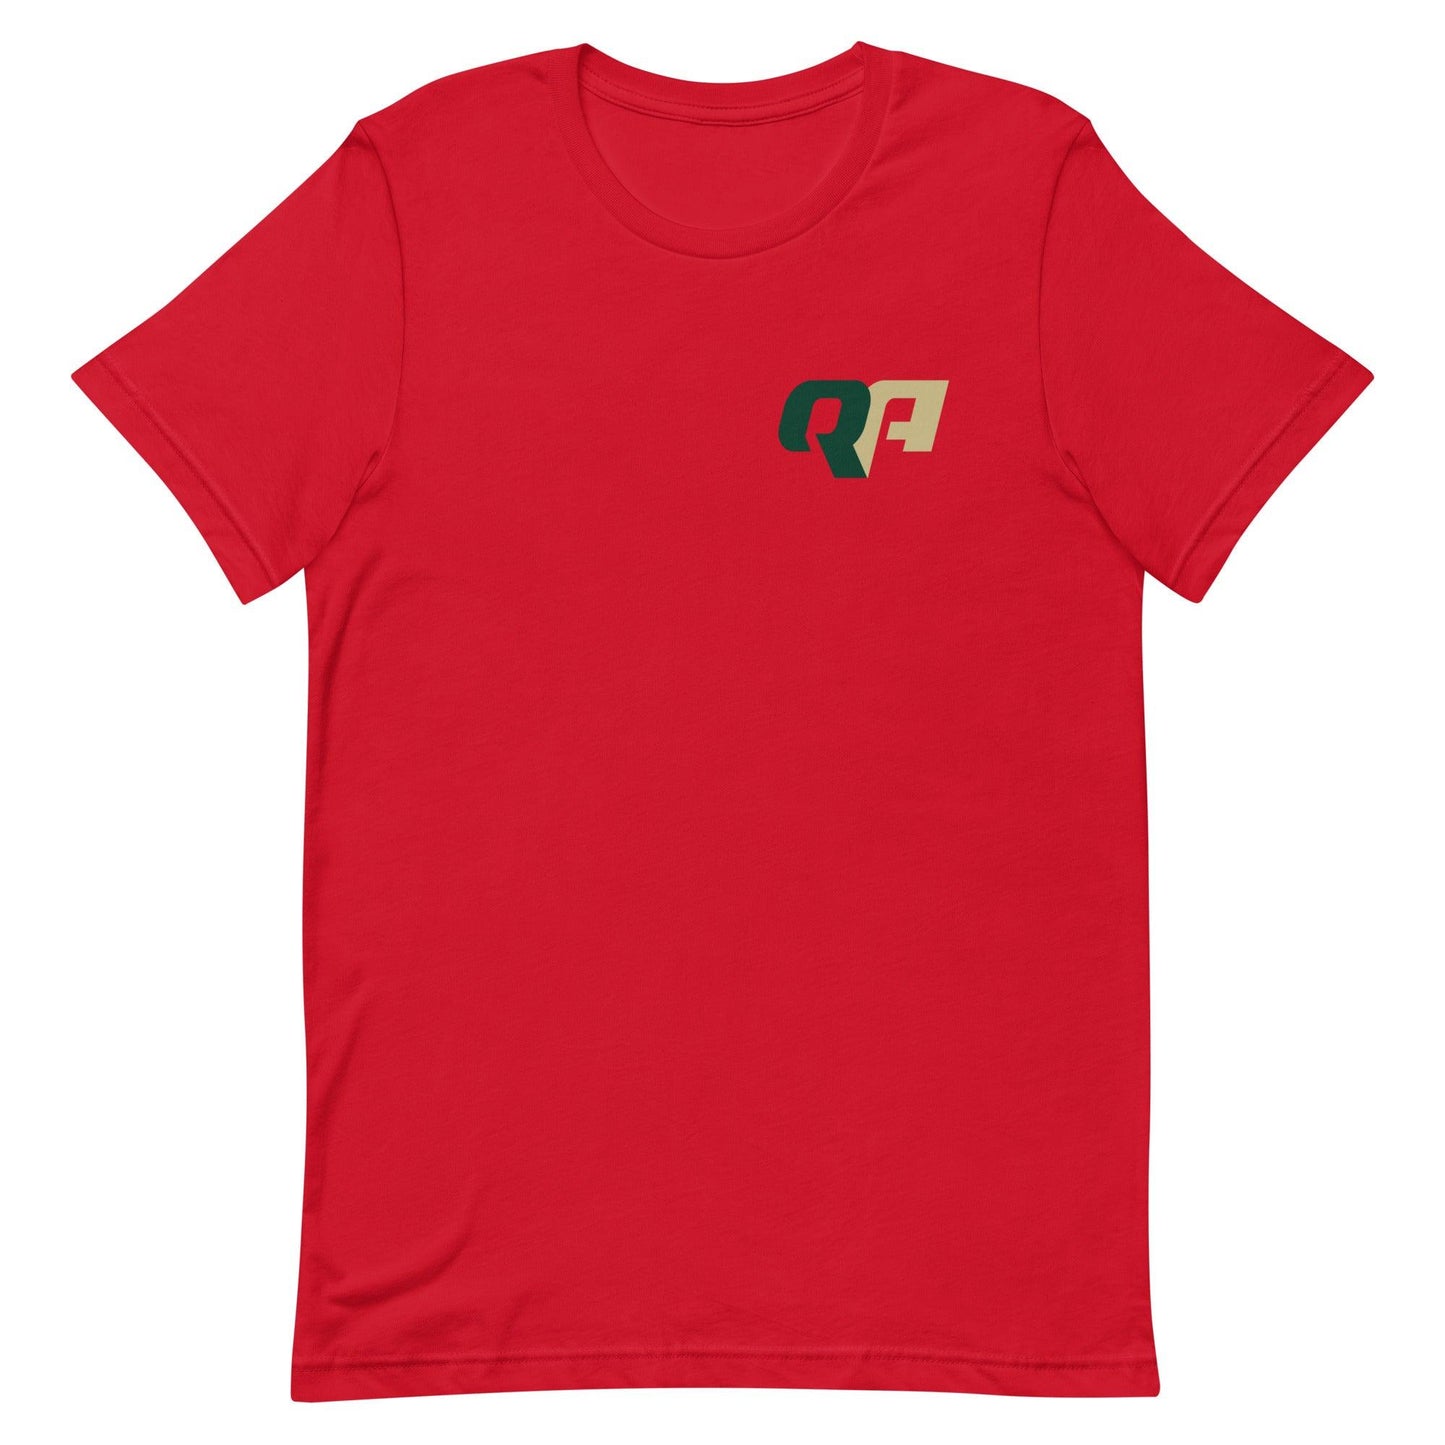 Quadry Adams "Essential" t-shirt - Fan Arch